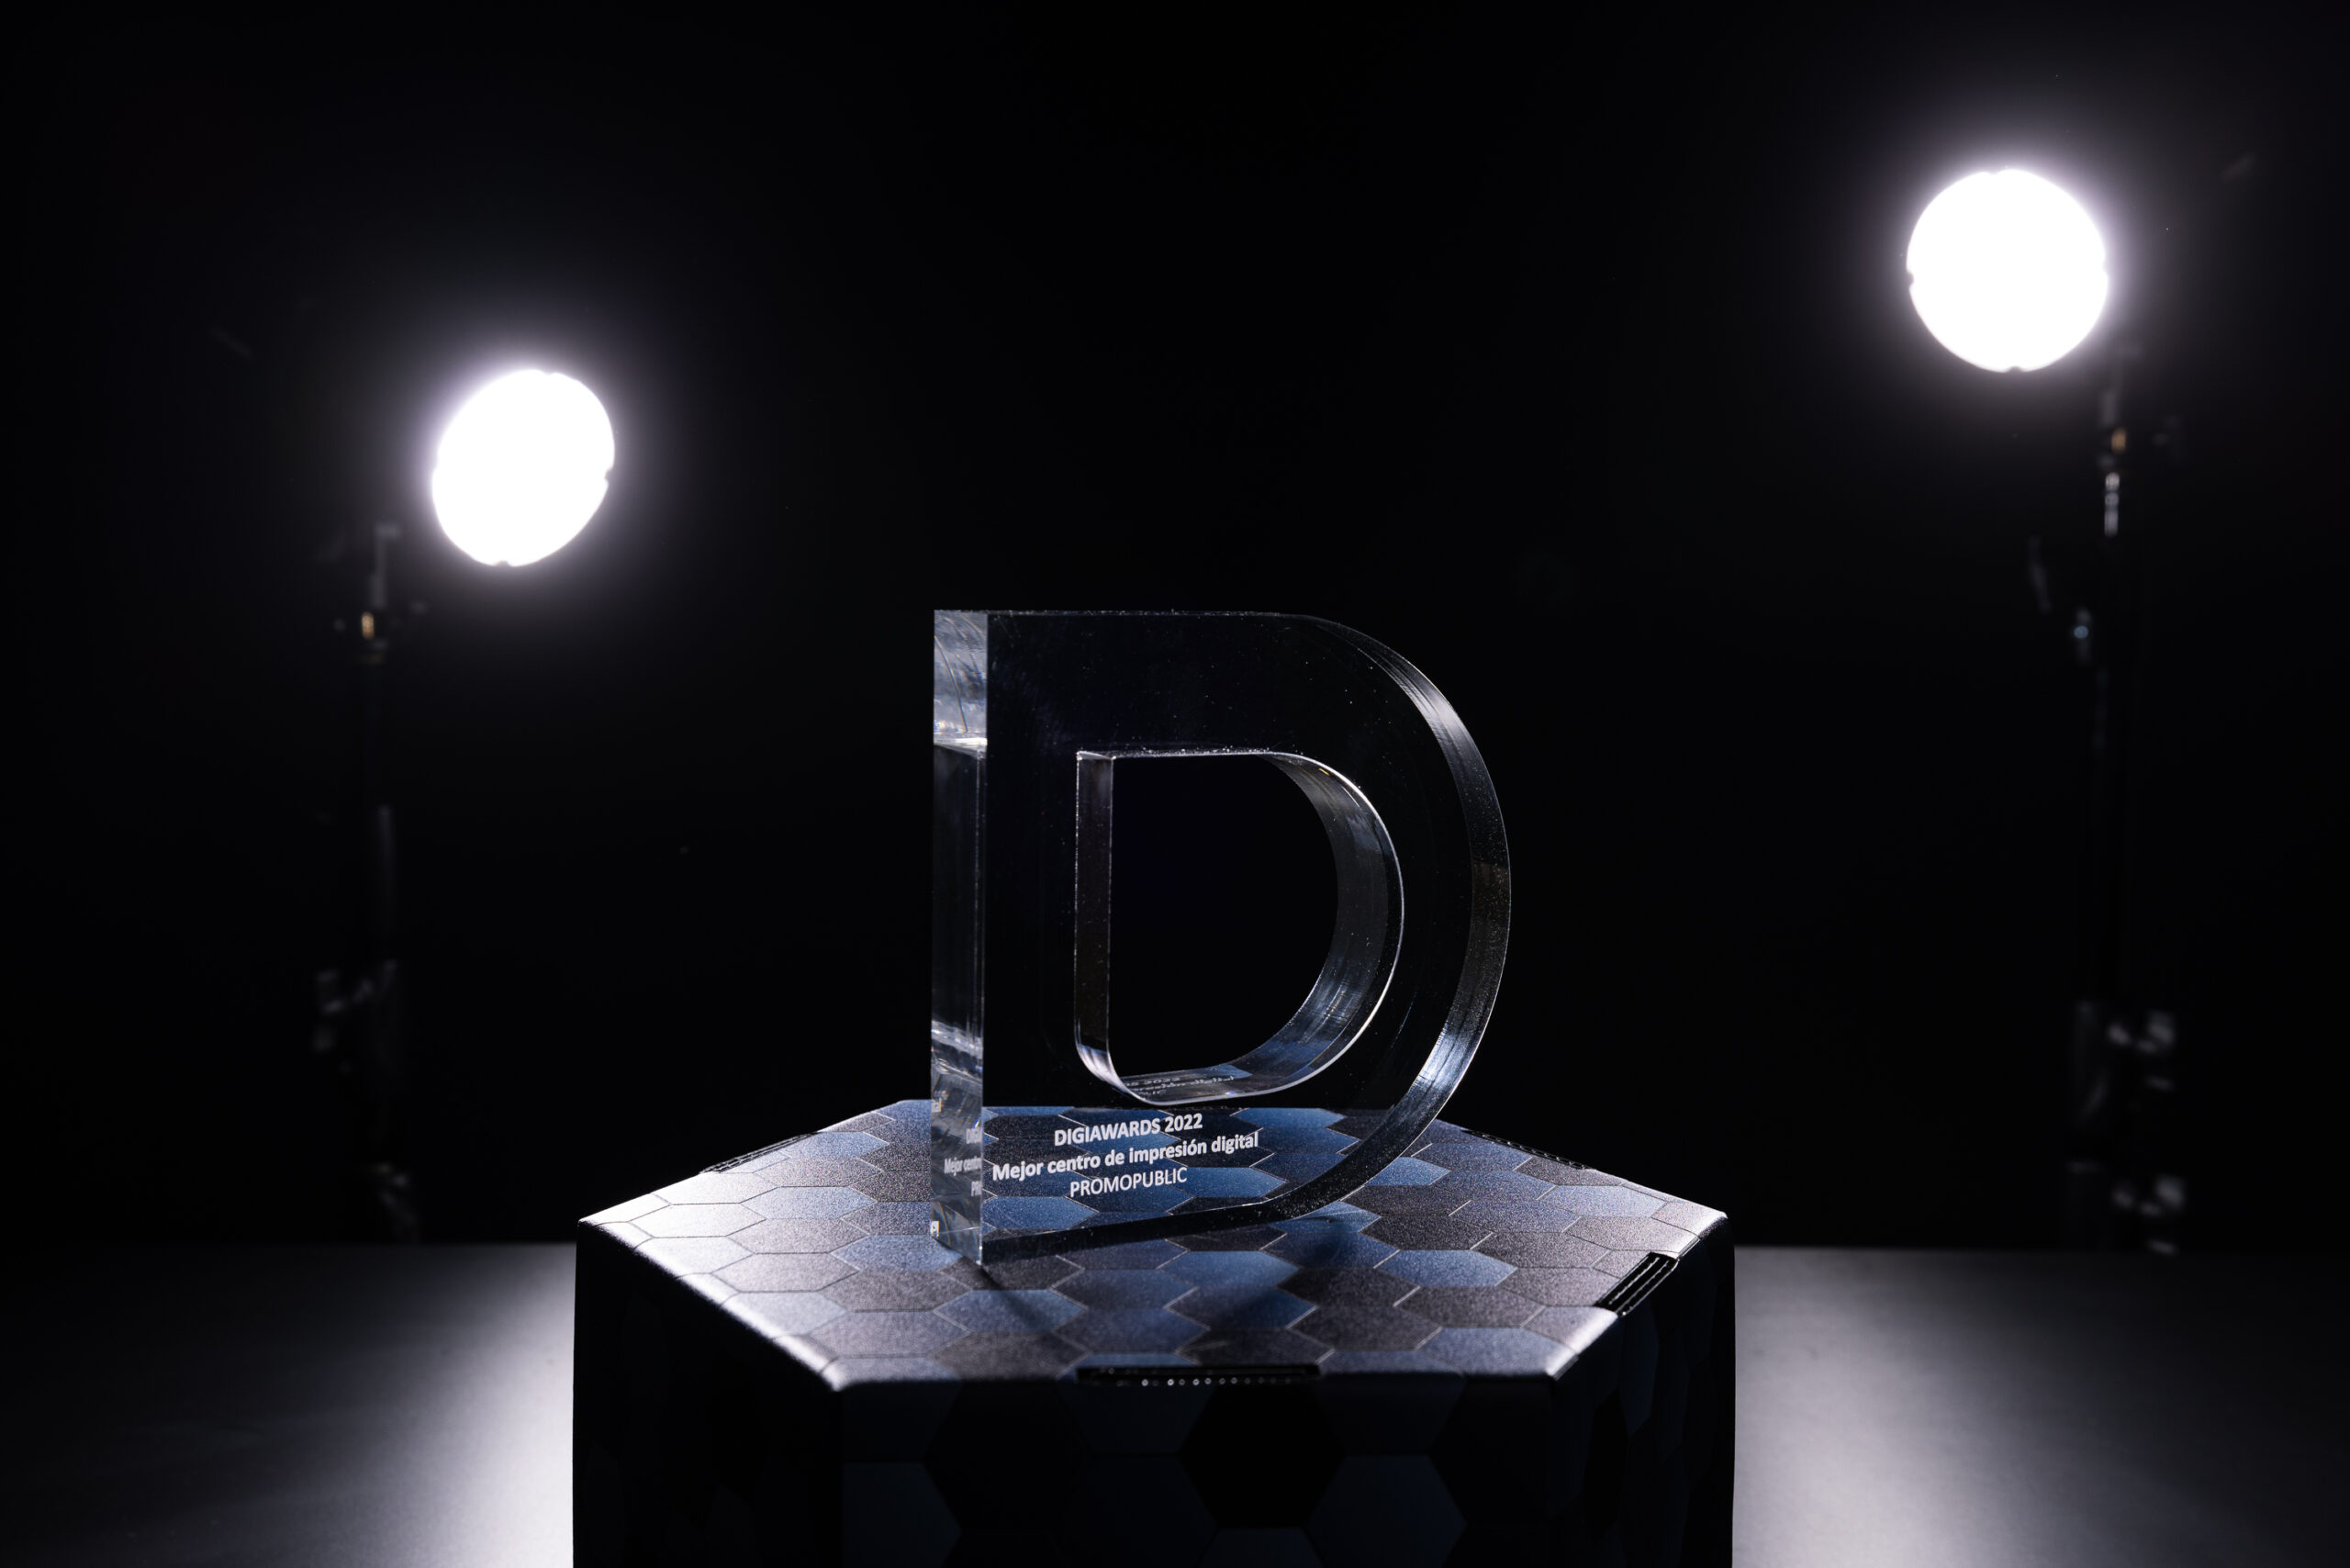 Premio DigiAwards al Mejor Centro de Impresión Digital - Promopublic